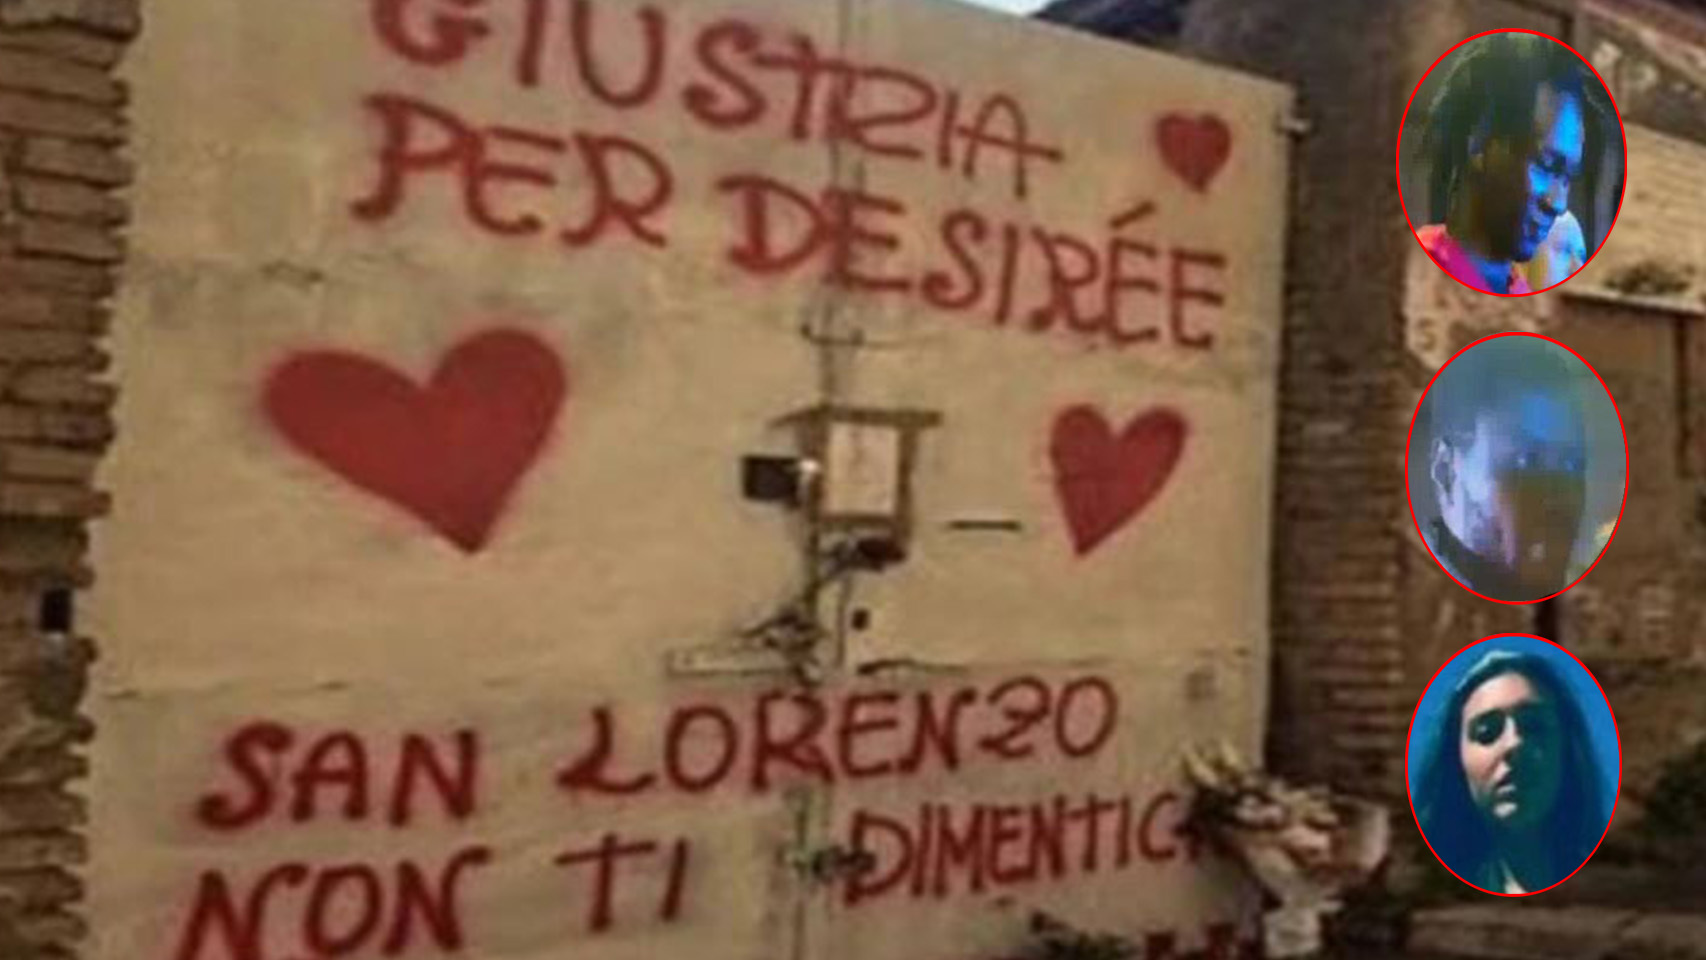 Dos de los arrestados y Desirée, la victima, sobre un graffiti en el que se lee Justicia para Desirée. San Lorenzo no te olvida